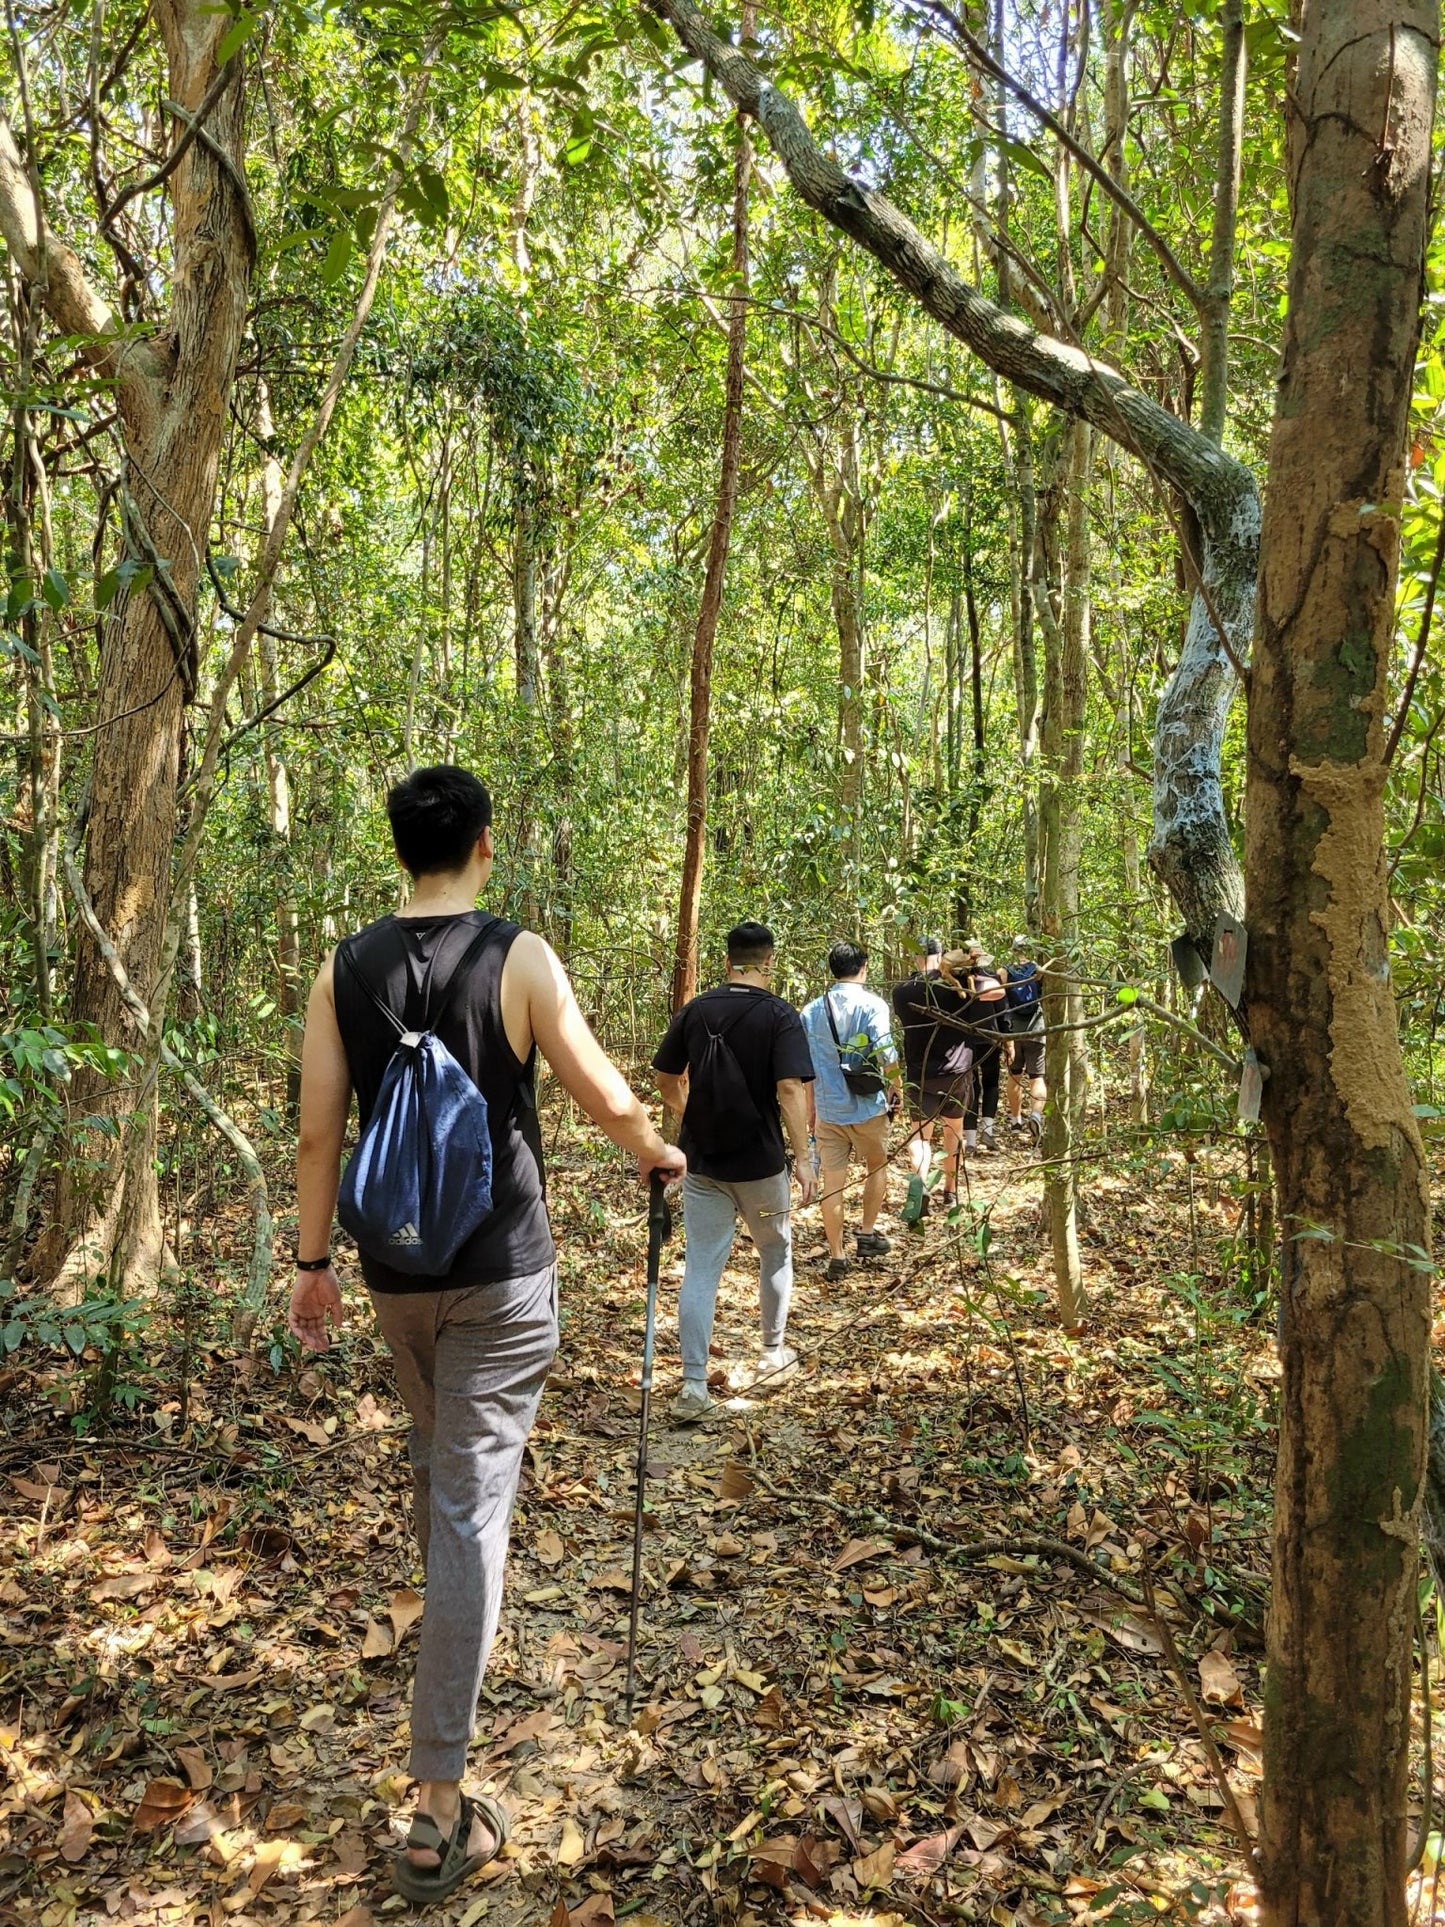 31A: Binh Chau Nature Reserve: Virgin Tropical Habitats